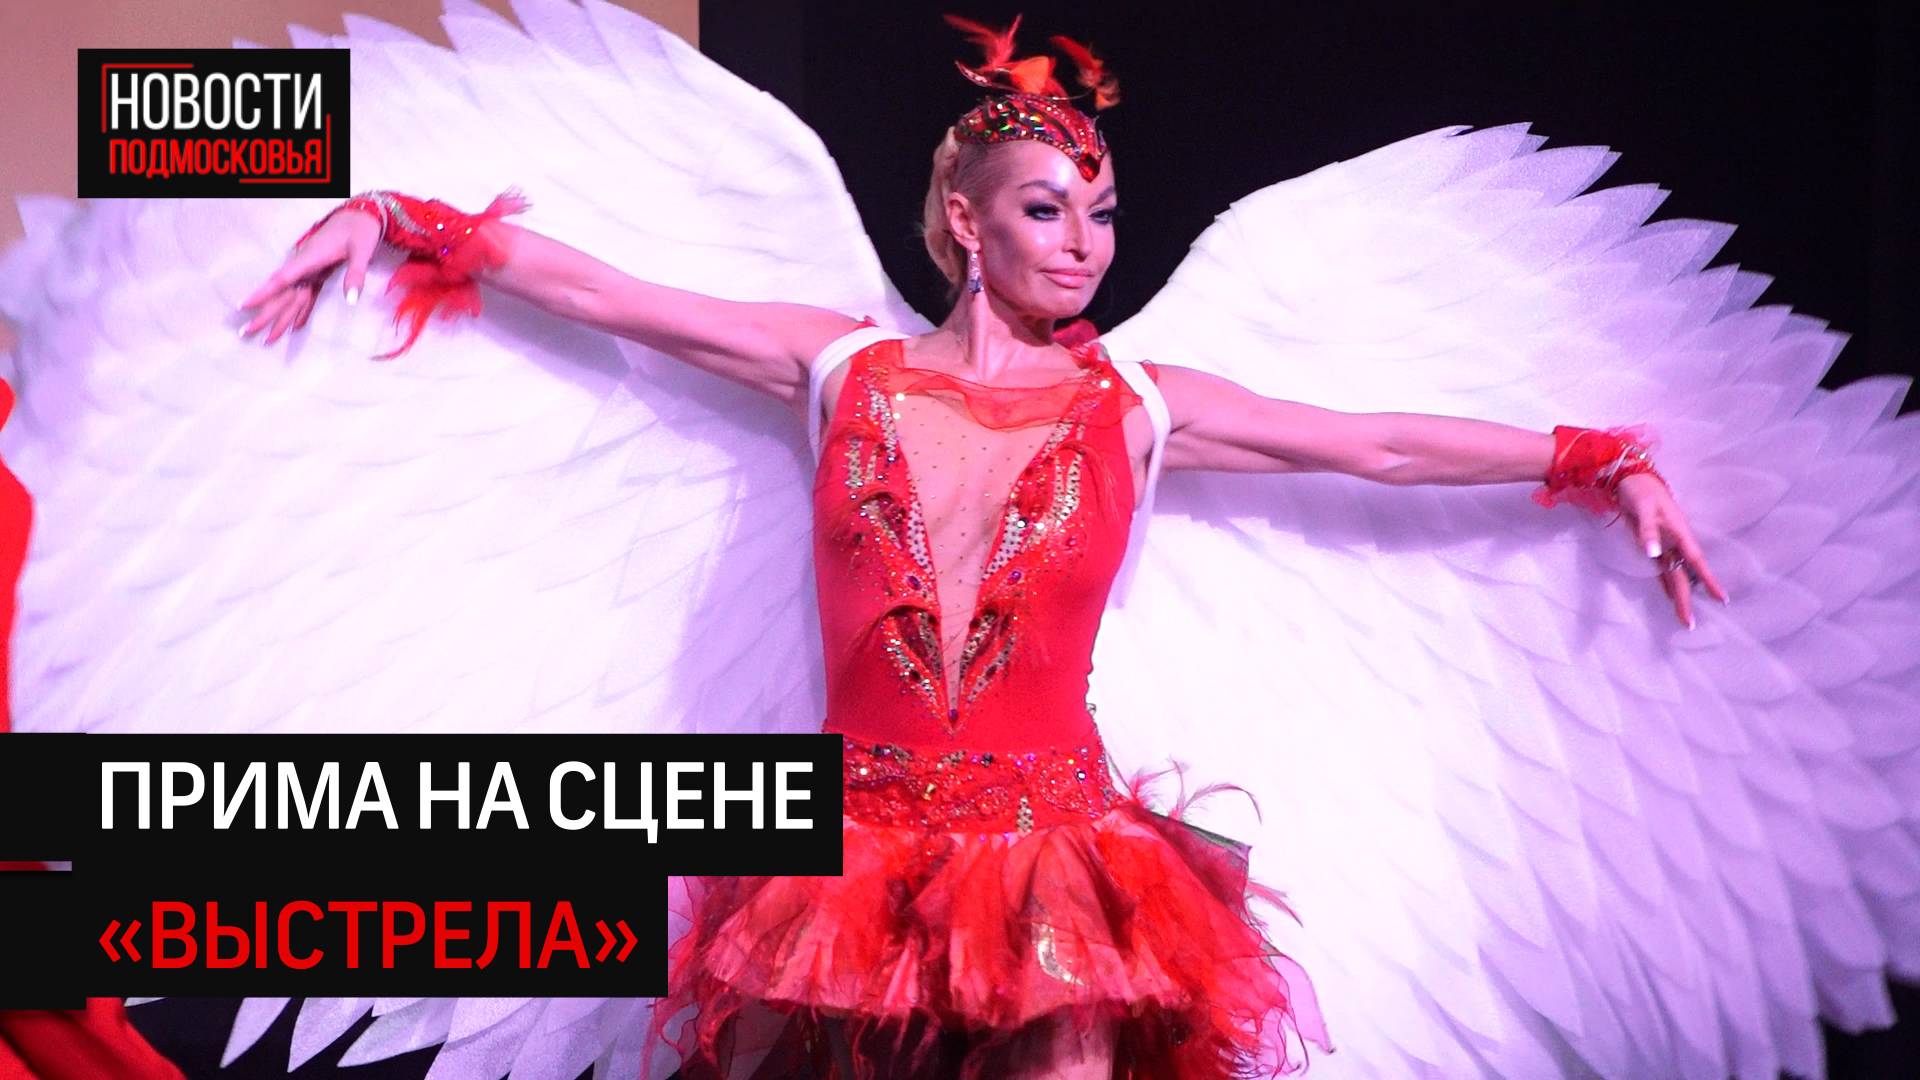 Анастасия Волочка приехала в Солнечногорск с благотворительным концертом